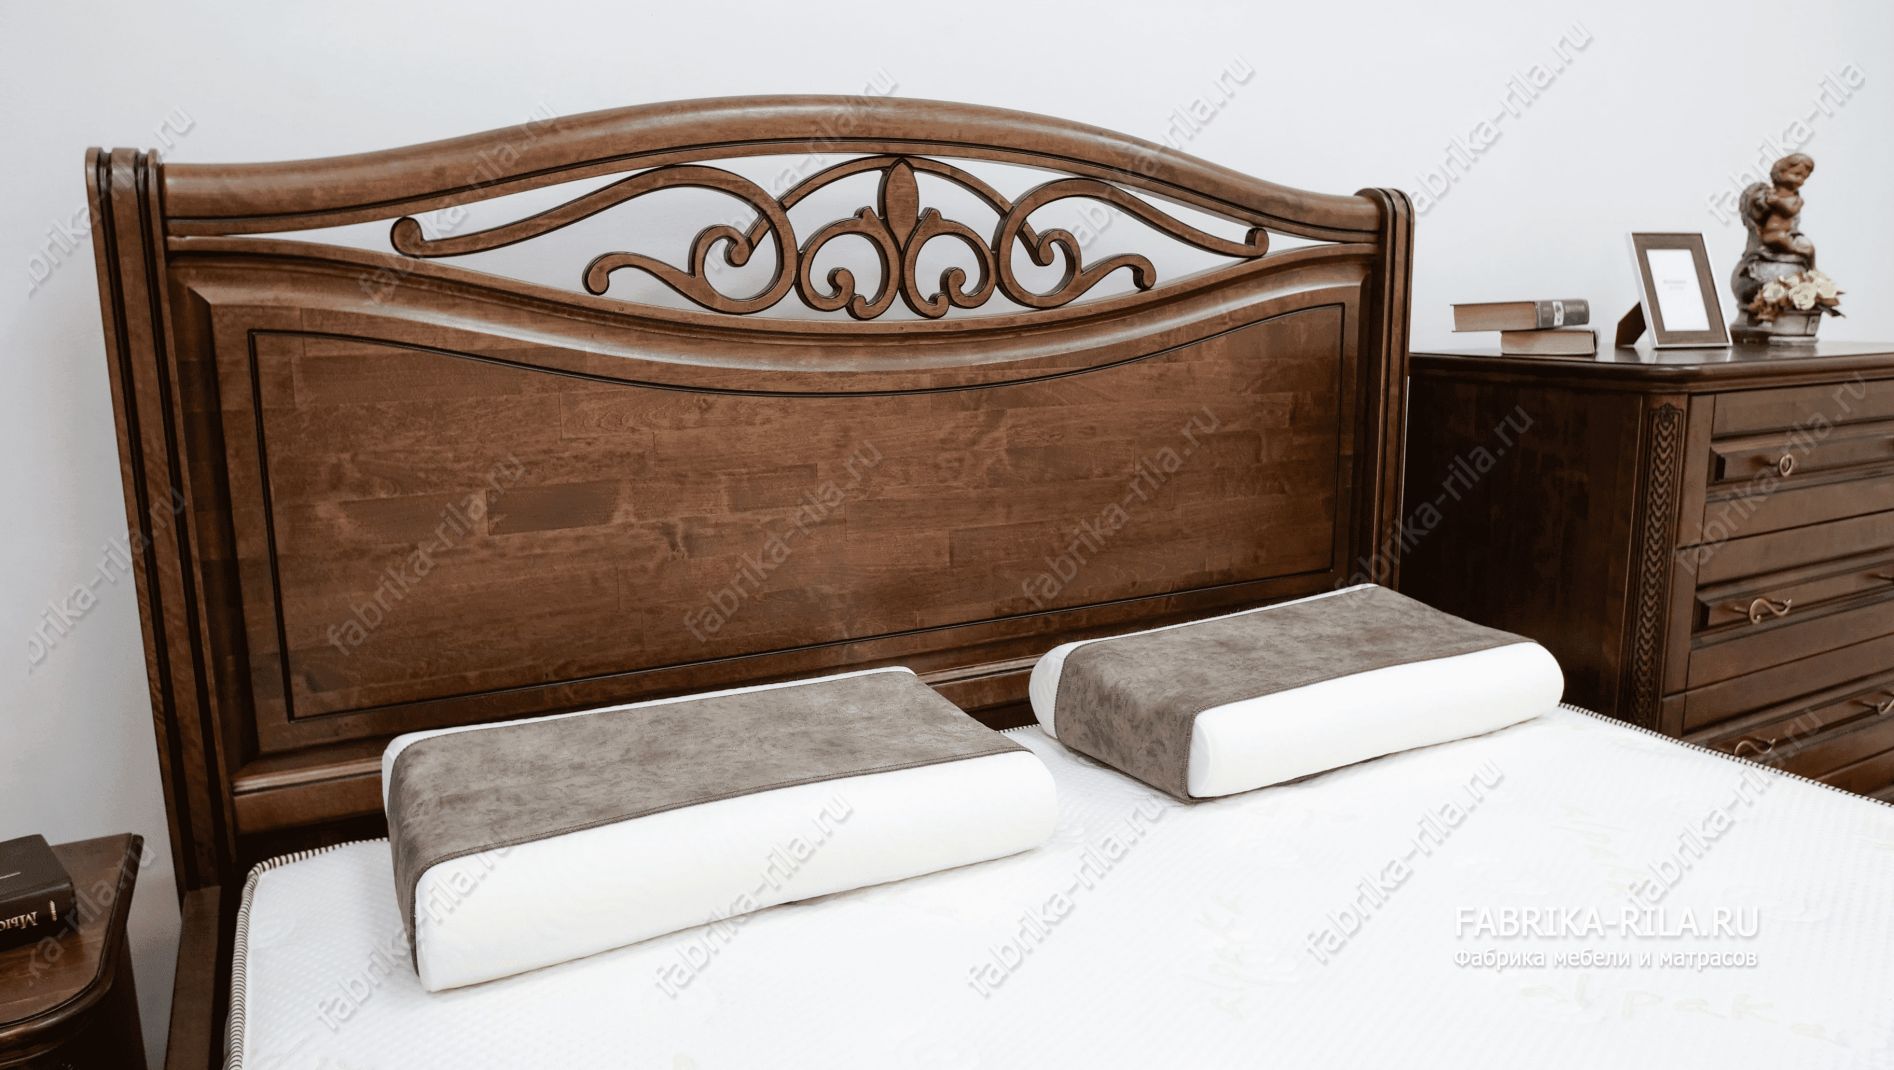 Кровать Plaza-2 — 160x200 см. из сосны